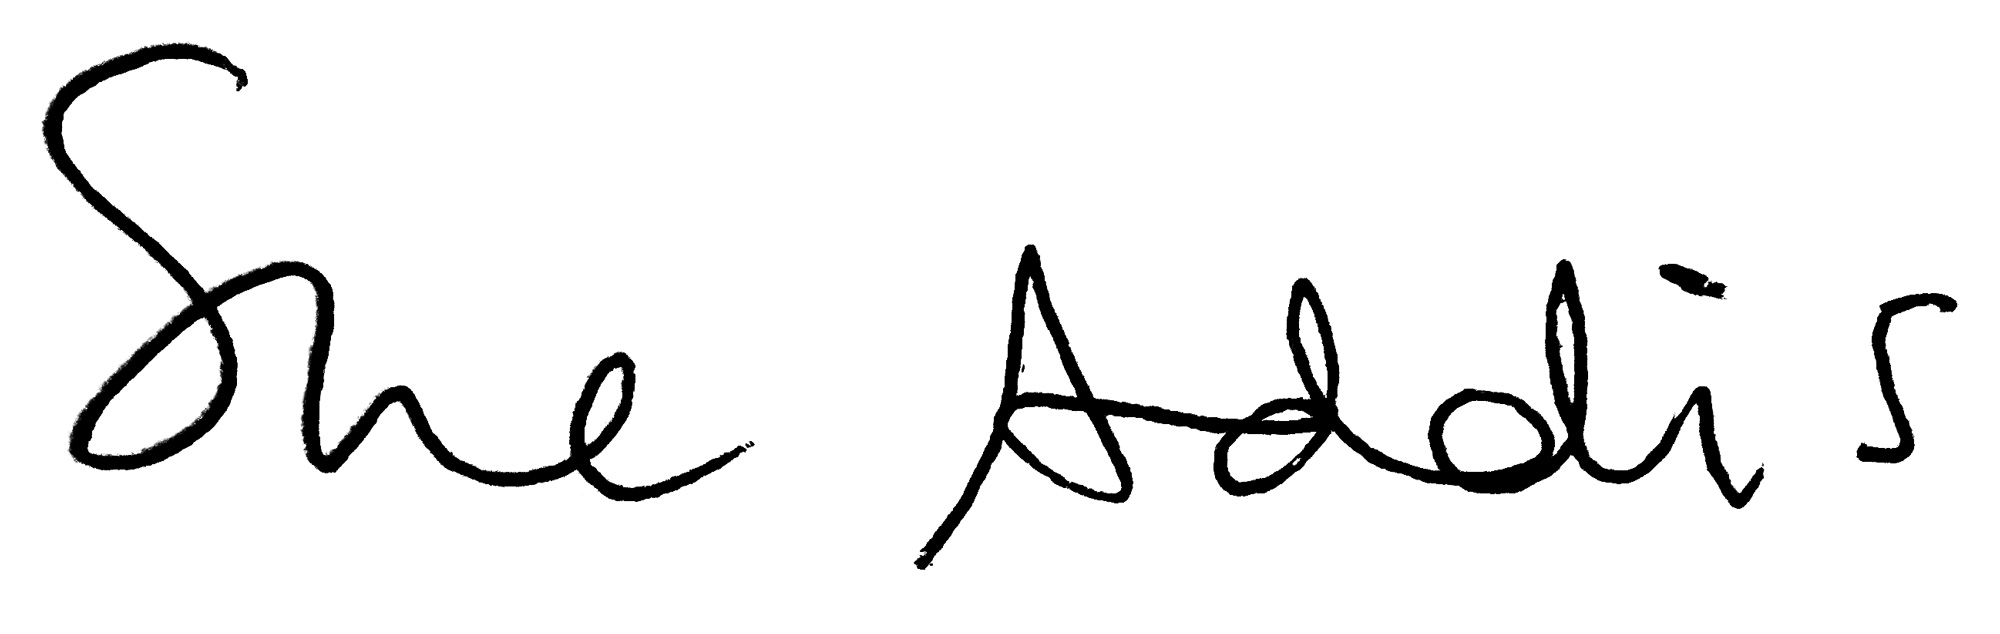 sue addis signature